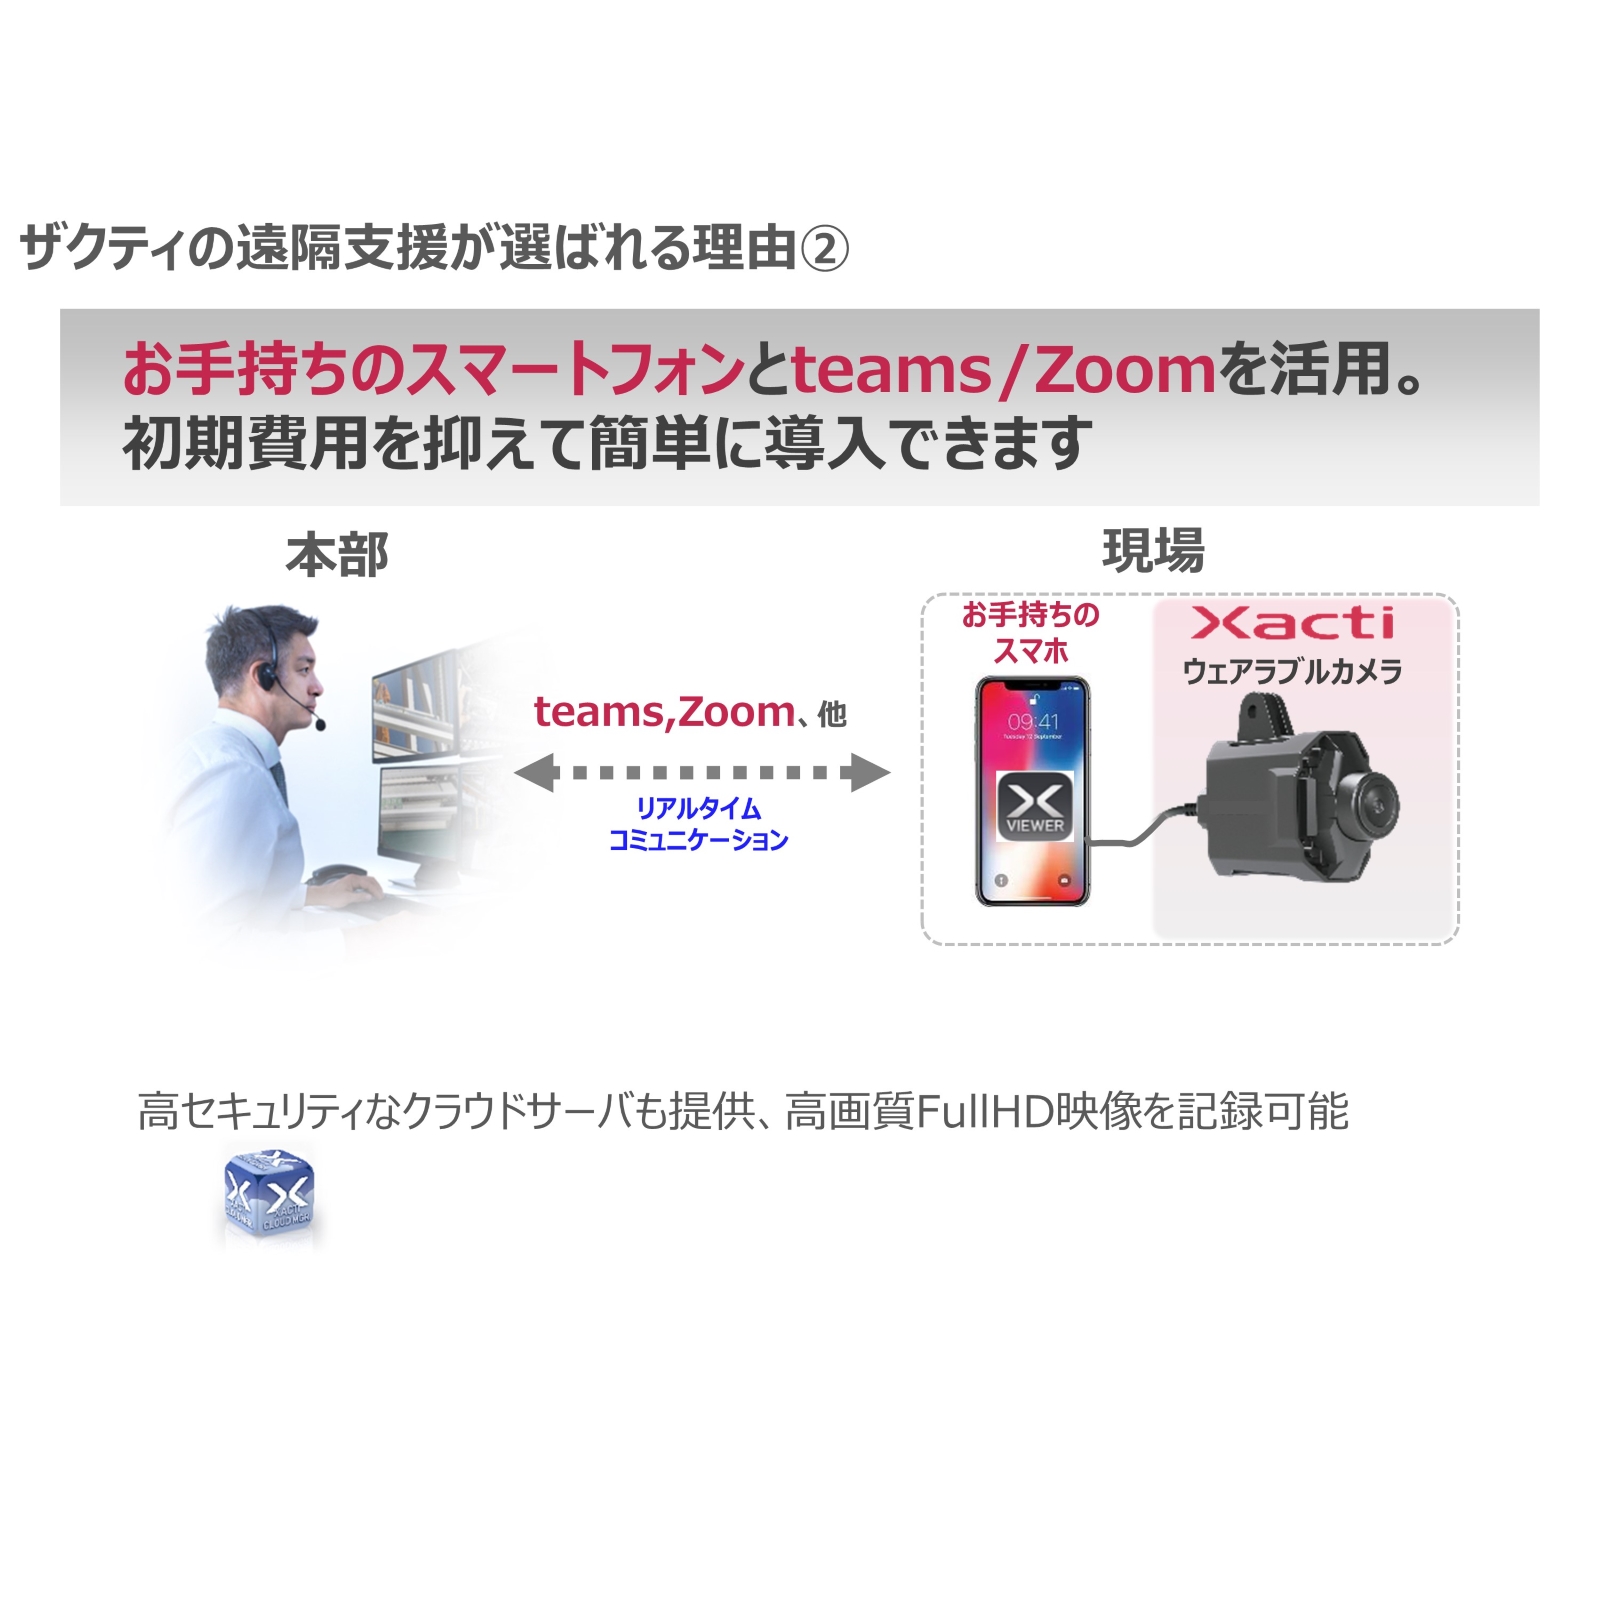 ザクティ Xacti 業務用ウェアラブルカメラ 頭部装着タイプ CX-WE100T1 (ワンタッチ接続12ヶ月分付属パッケージ) (送料無料)